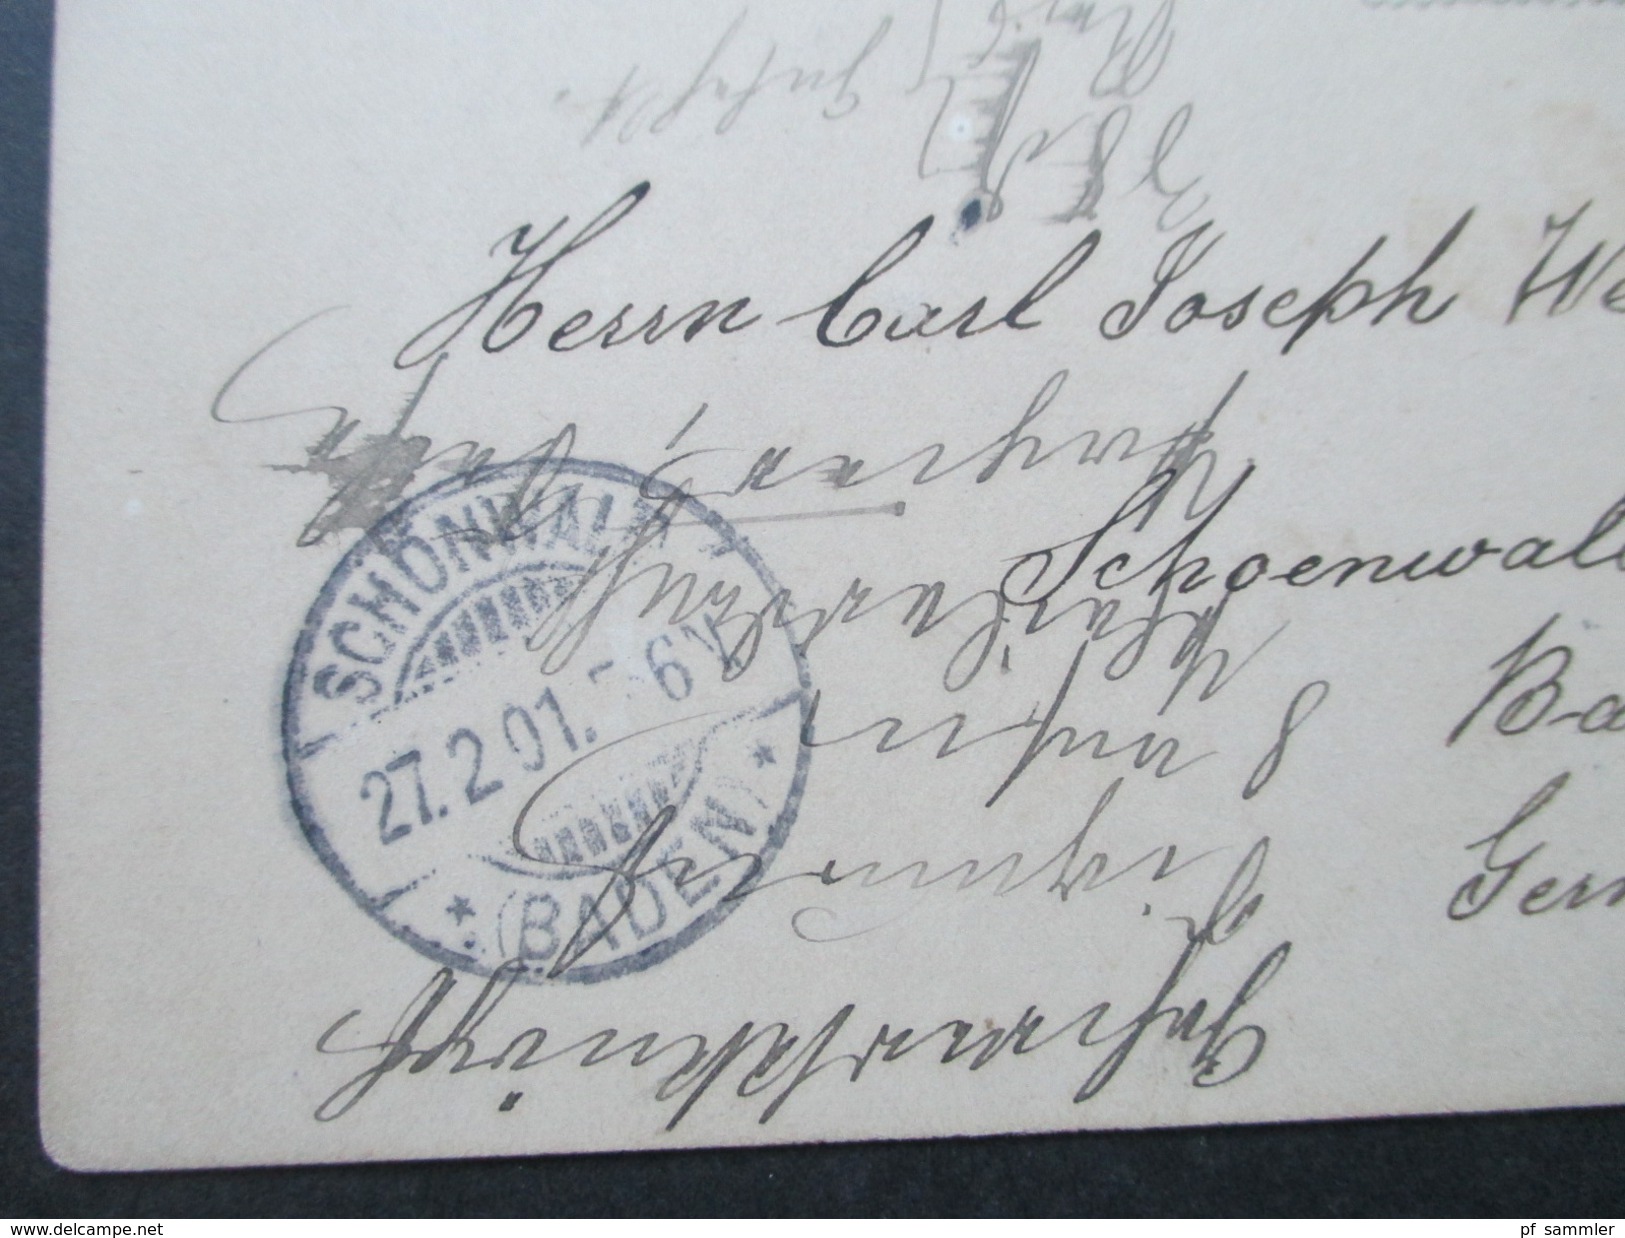 GB 1899 - 1920 Registered letter / Postcards / Streifband! 7 Stück! aus einer Korrespondenz! Interessant?!